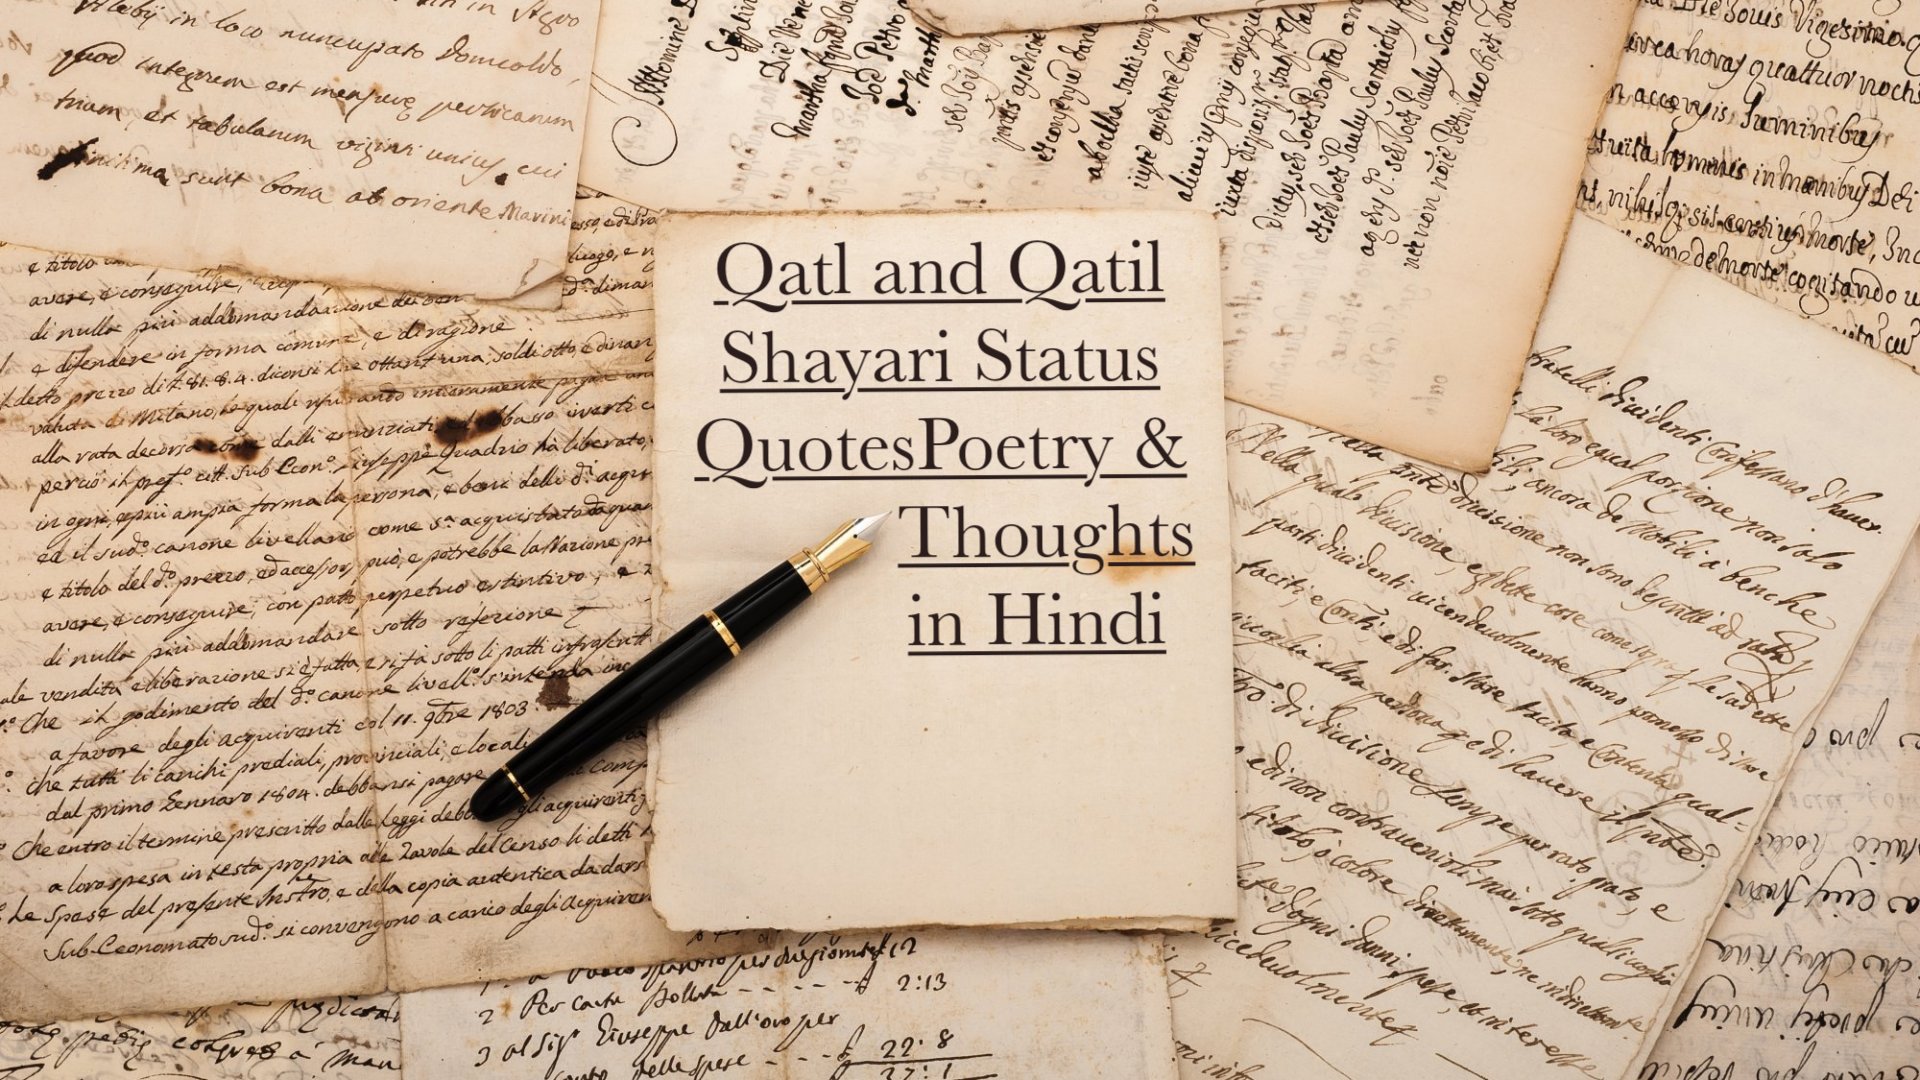 Best Collection of Qatl and Qatil Shayari Status Quotes Poetry & Thoughts in Hindi for Everyone Whatsapp FB | कत्ल / कातिल पर शायरी स्टेटस कोट्स कविता हिंदी में